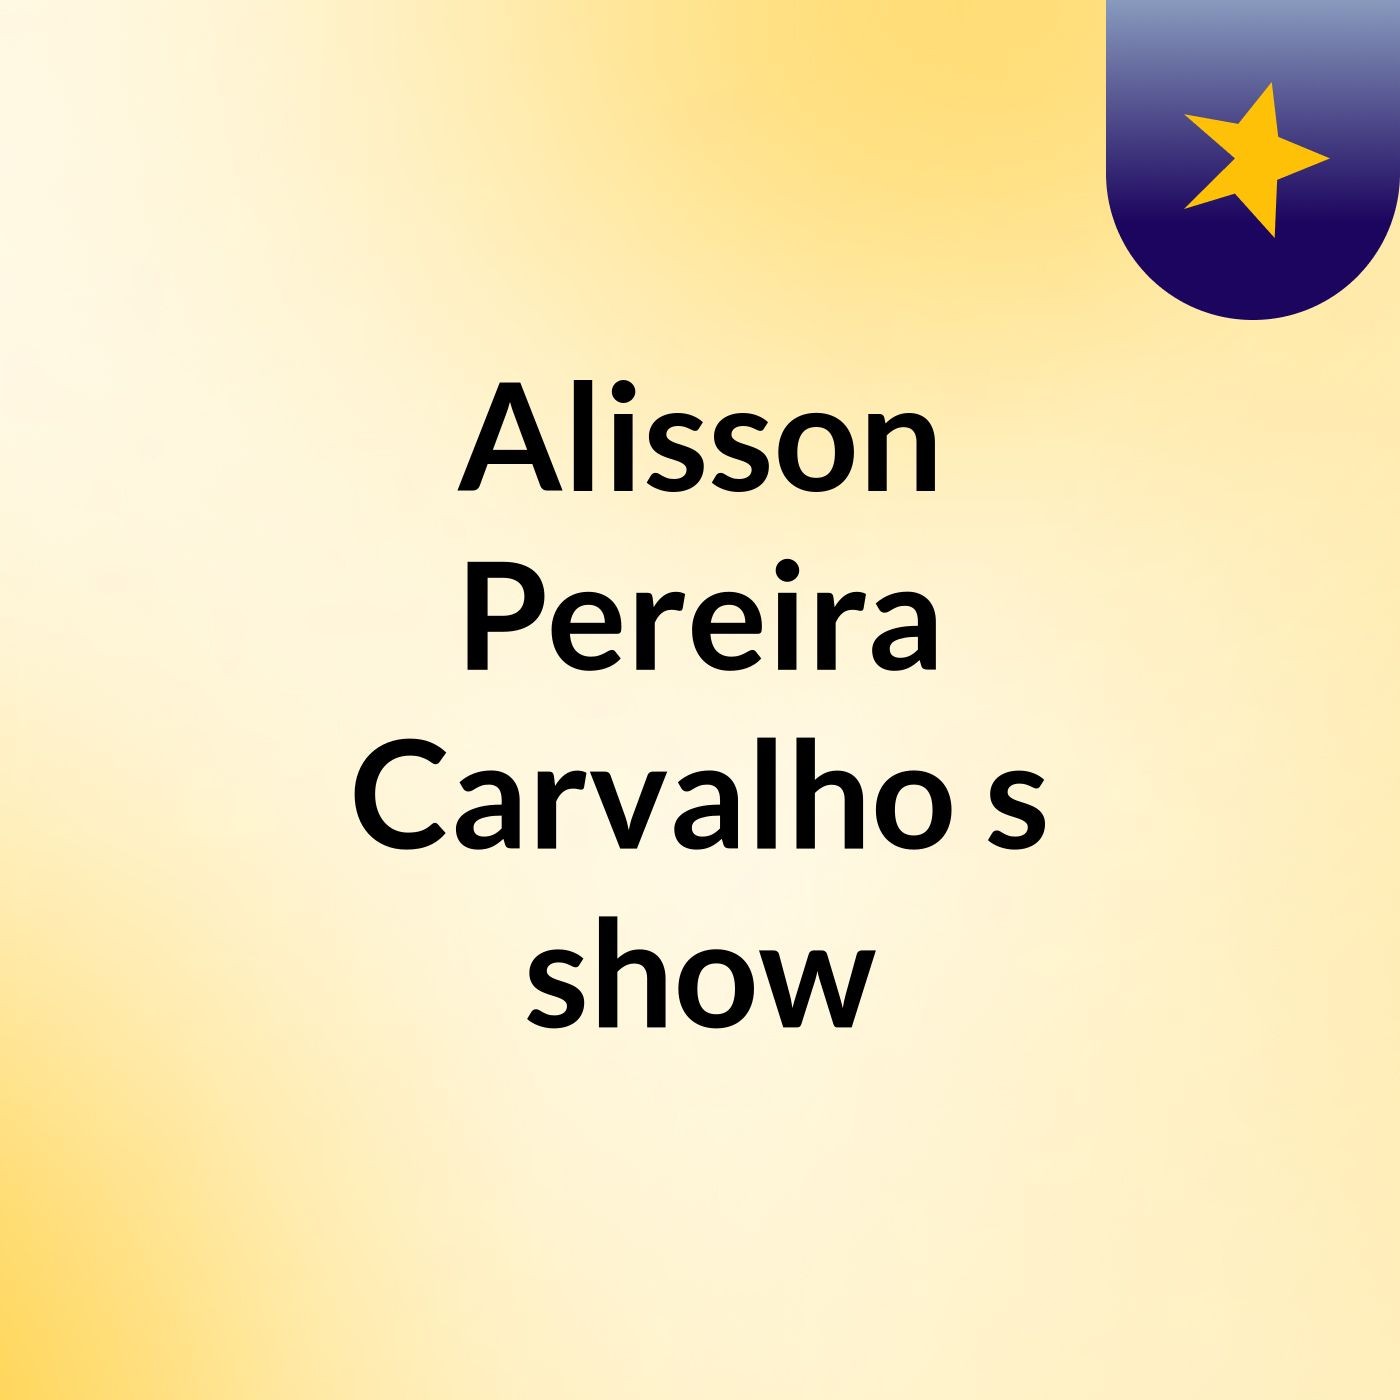 Alisson Pereira Carvalho's show